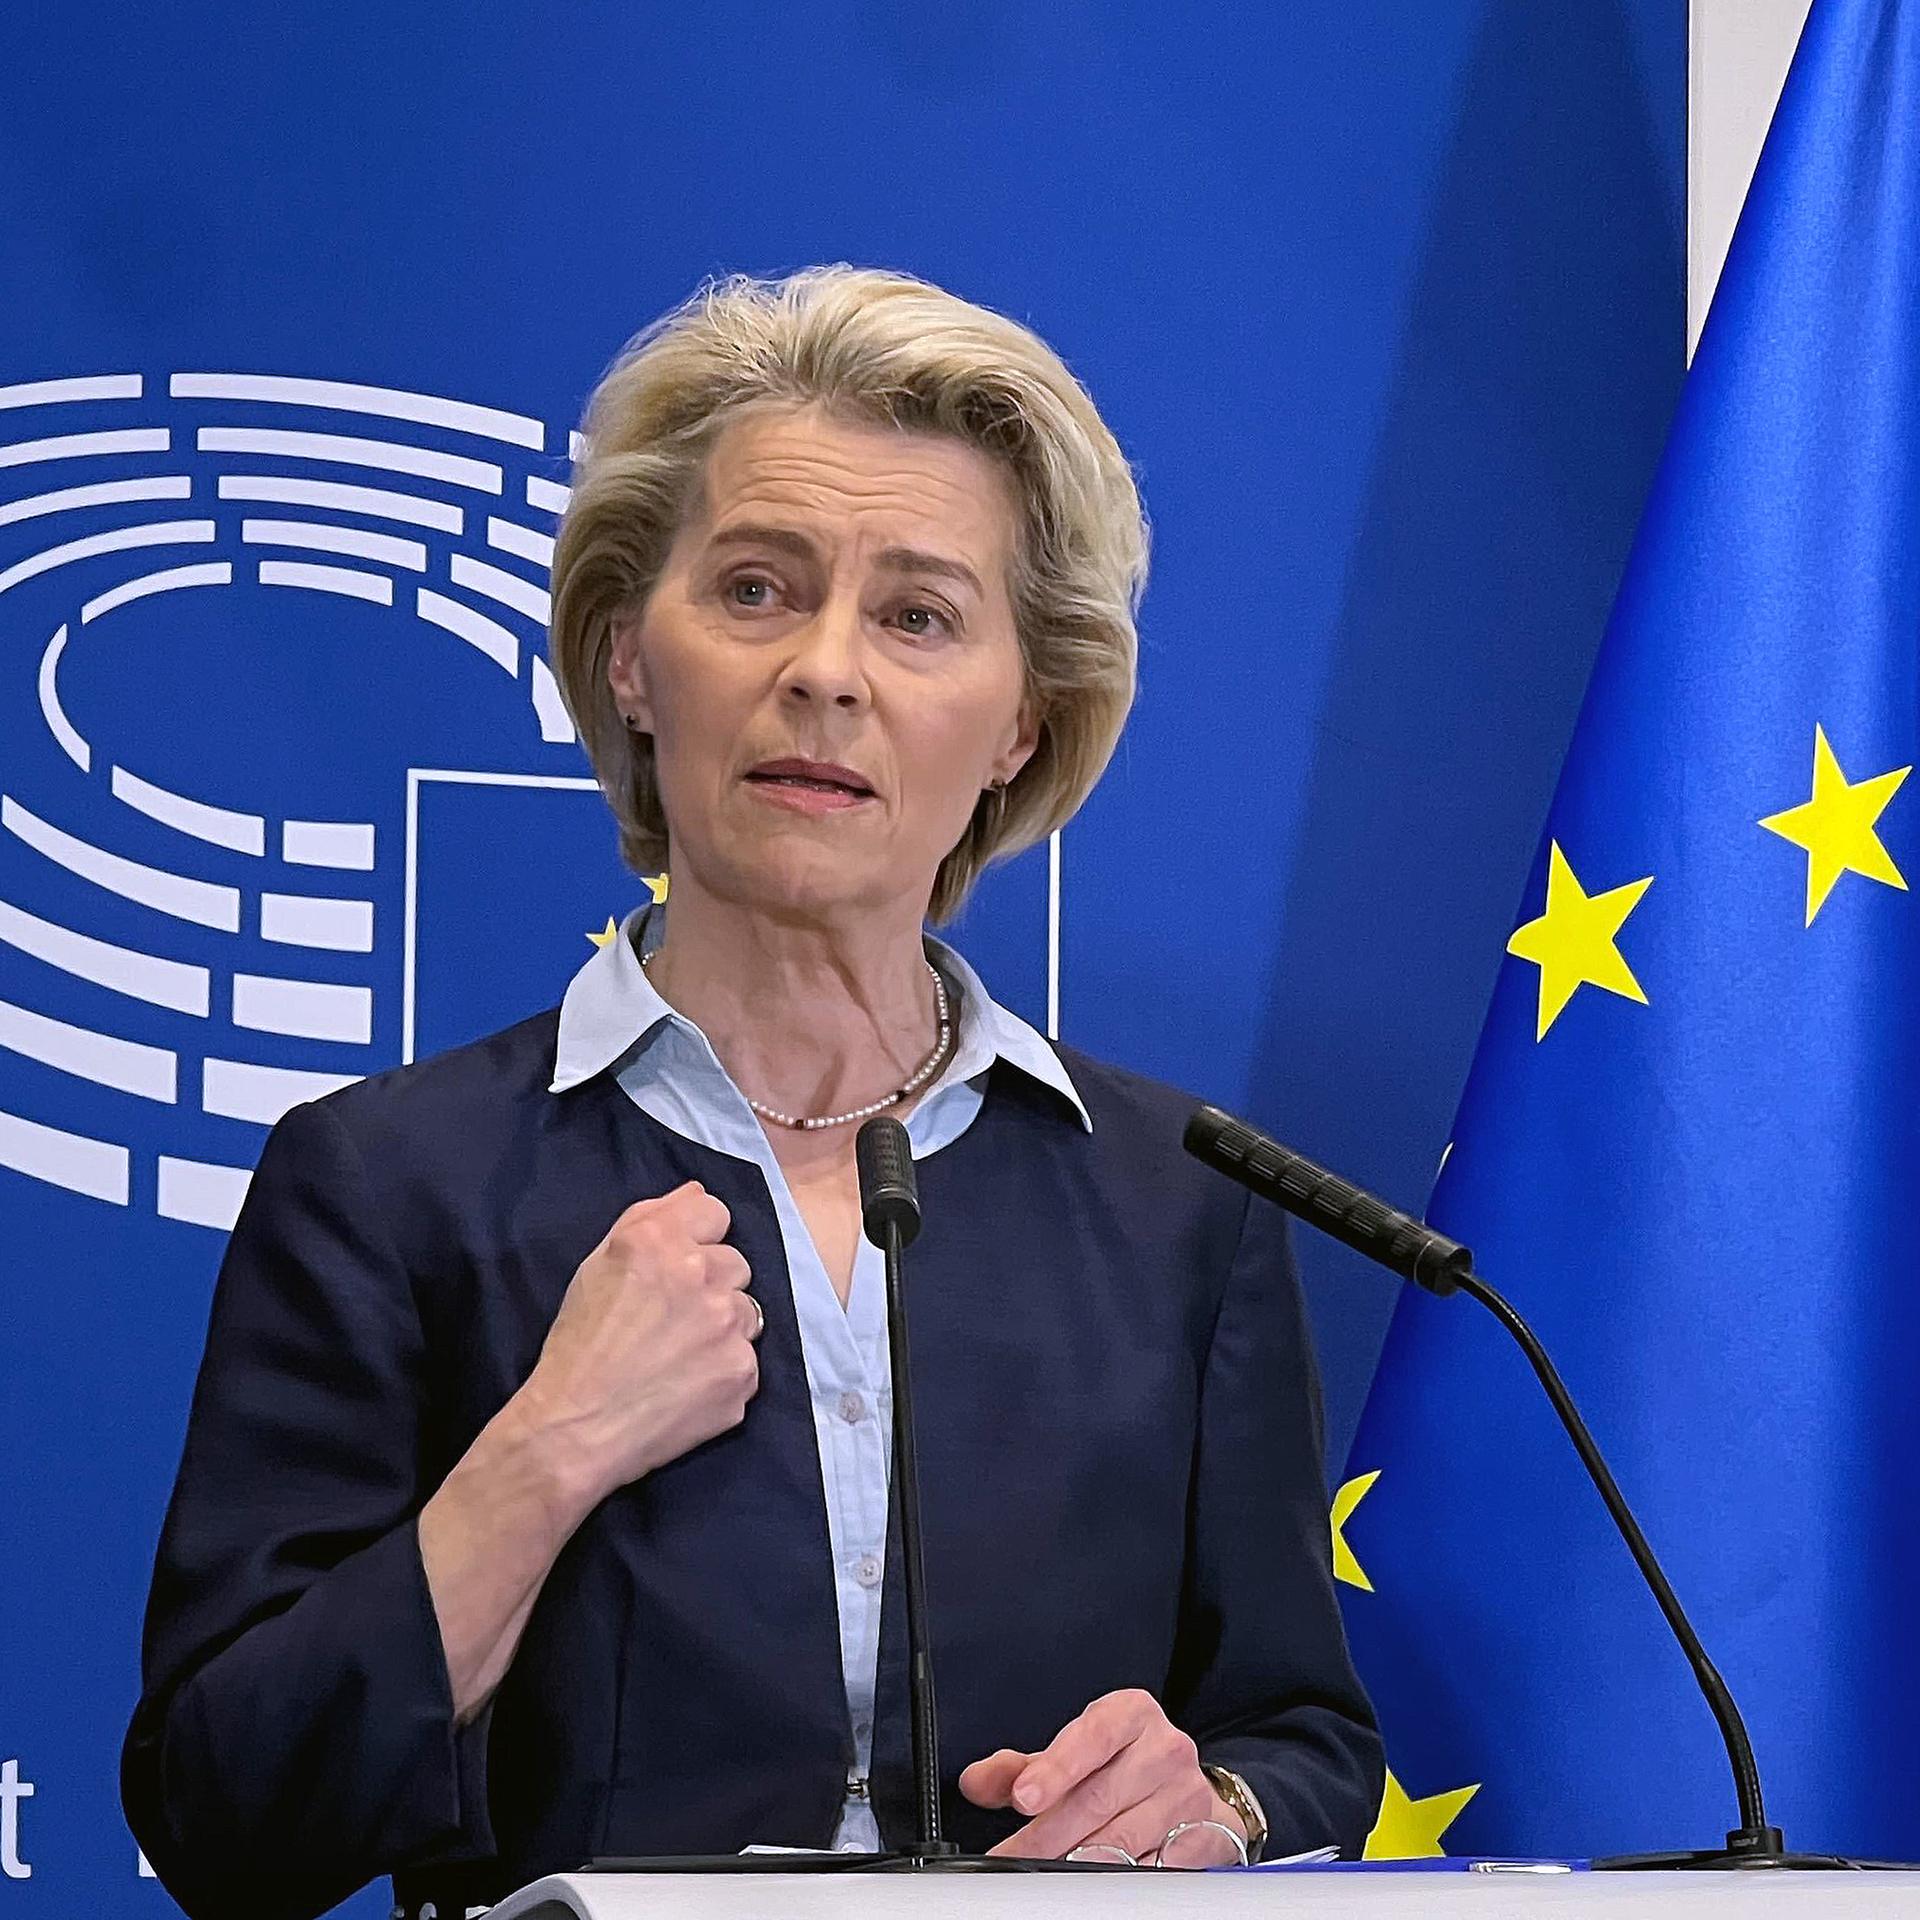 Ursula von der Leyen, Präsidentin der Europäischen Kommission, spricht bei einer Pressekonferenz im Europäischen Parlament. Hinter ihr das Logo des Europäischen Parlaments mit dem stilisierten Plenarsaal und daneben die EU-Flagge.  